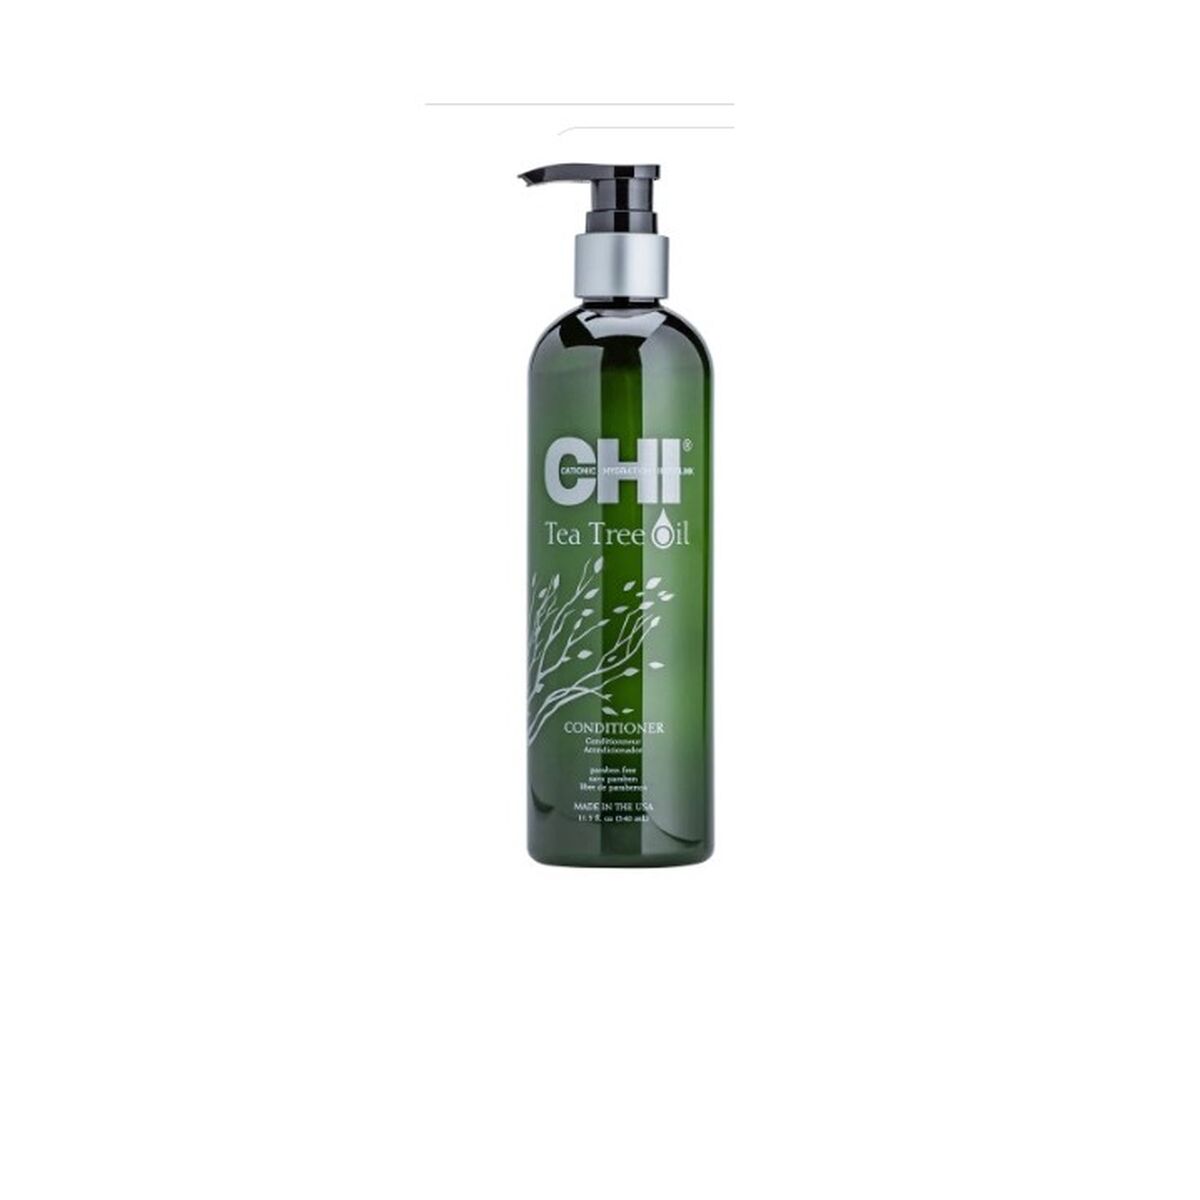 Osta tuote Hoitoaine Farouk Chi Tea Tree Oil 340 ml verkkokaupastamme Korhone: Terveys & Kauneus 10% alennuksella koodilla KORHONE